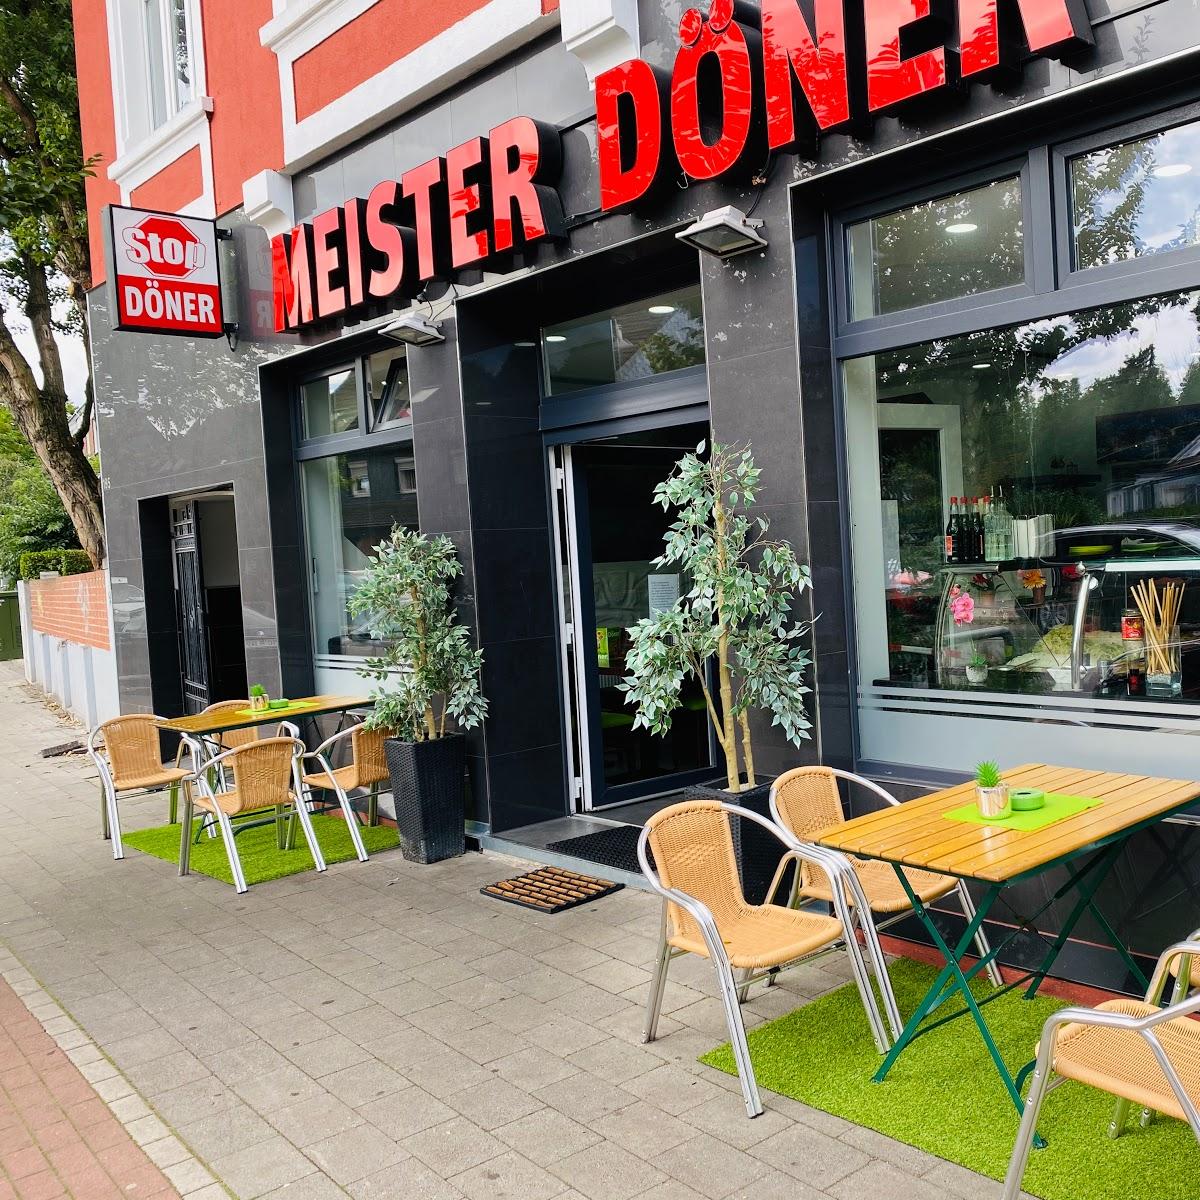 Restaurant "Meister Döner" in Oberhausen